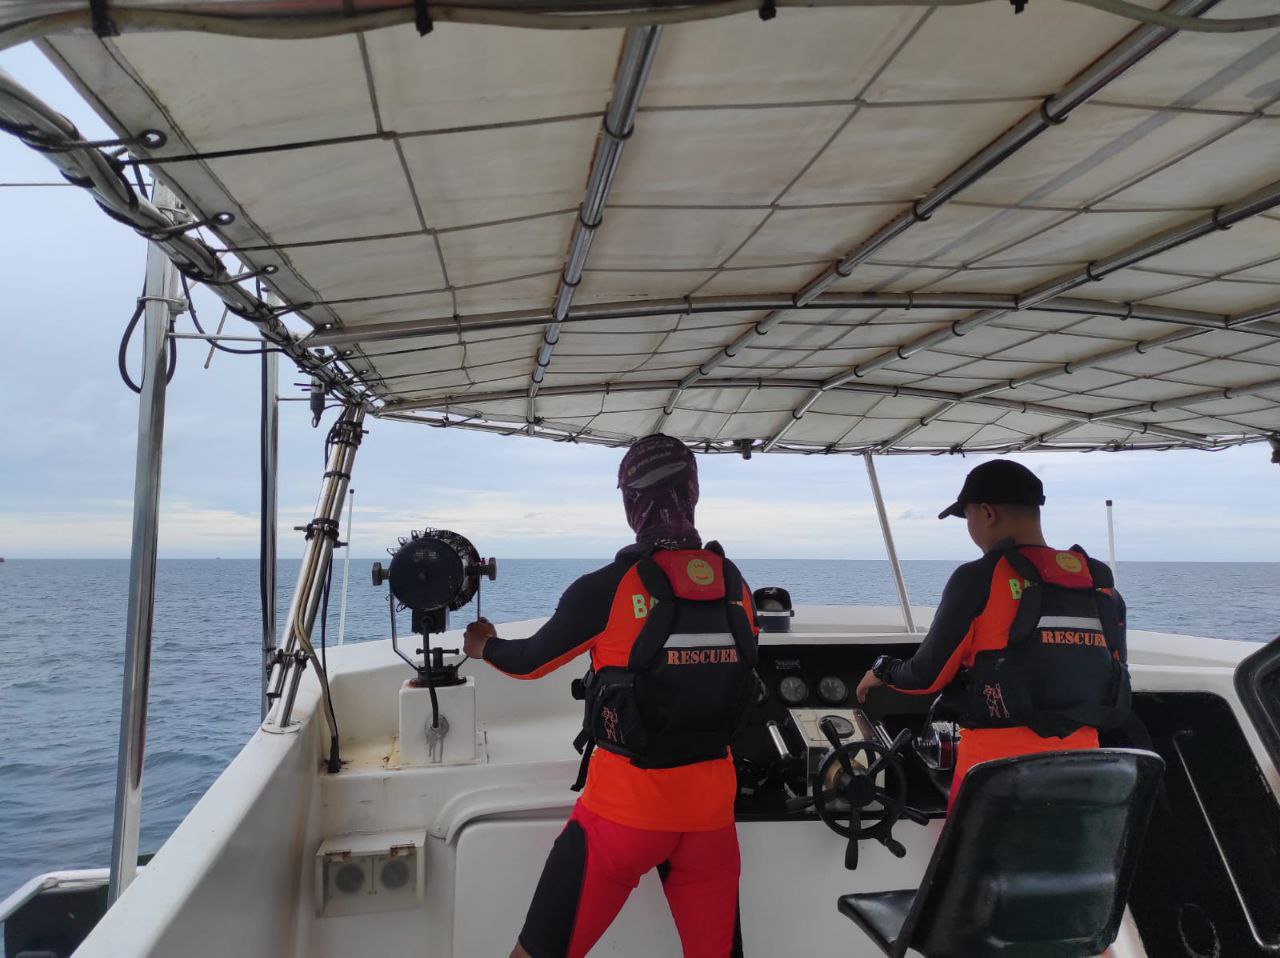 Kapal Jaring Ikan Terbalik di Pulau Mapur Bintan, 1 Kru Hilang